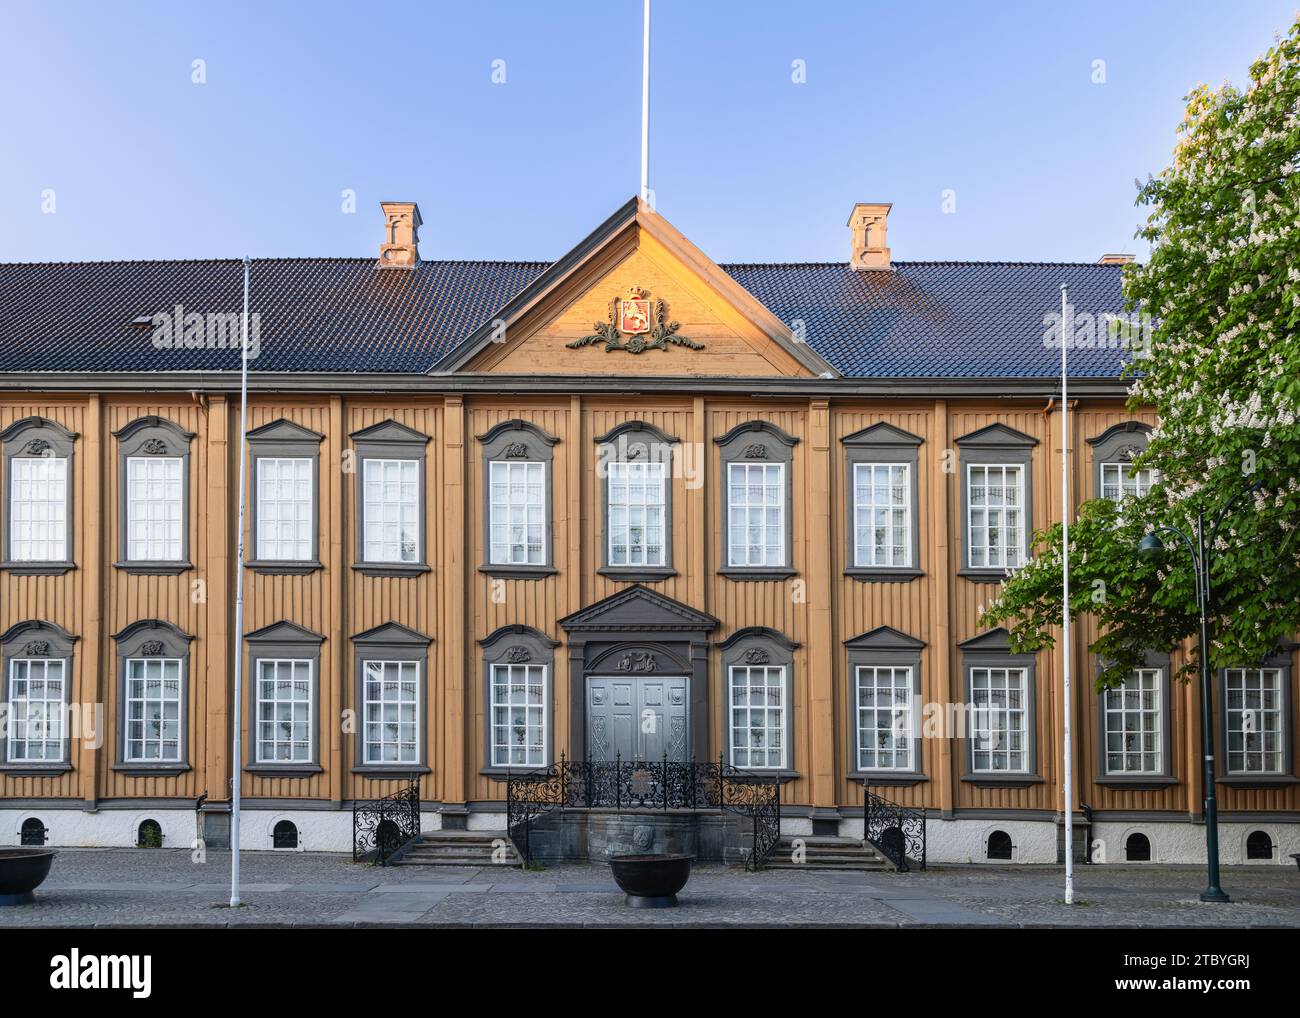 La facciata dello Stiftsgarden a Trondheim, Norvegia, presenta un'imponente struttura in legno del XVIII secolo, rinomata come una delle più grandi della Scandinavia Foto Stock